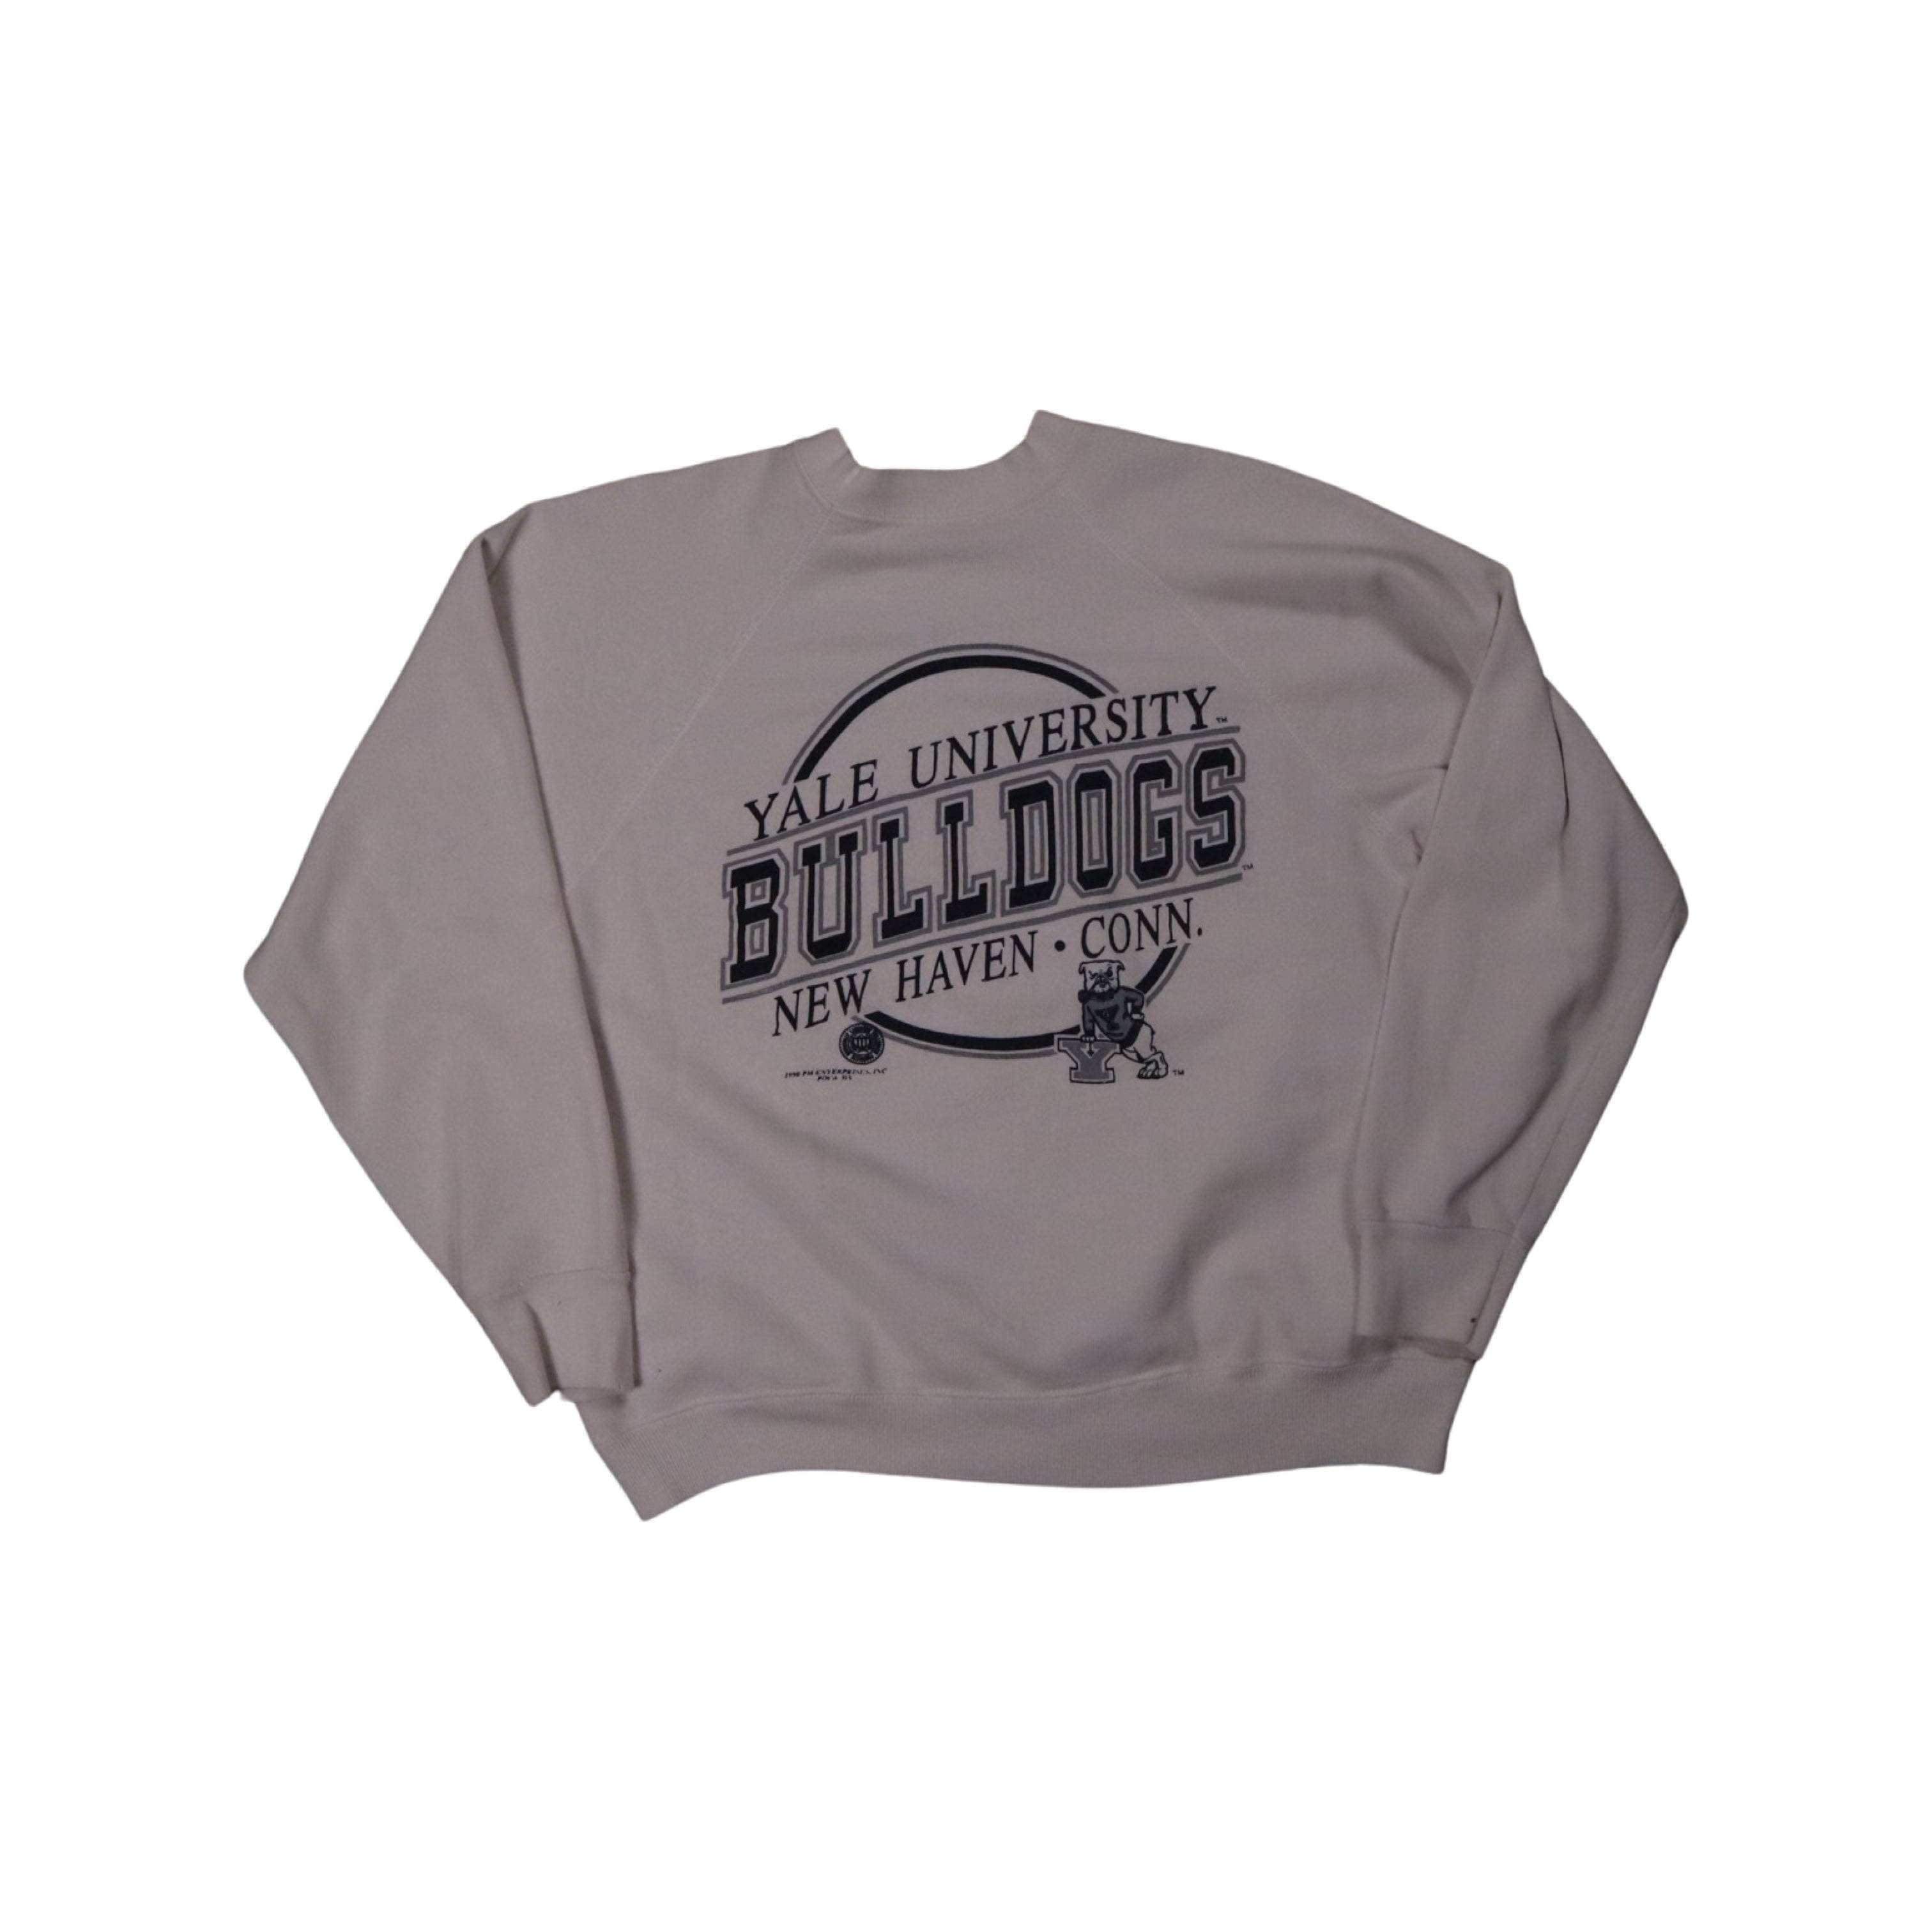 Yale University 1990 Sweater (Small)